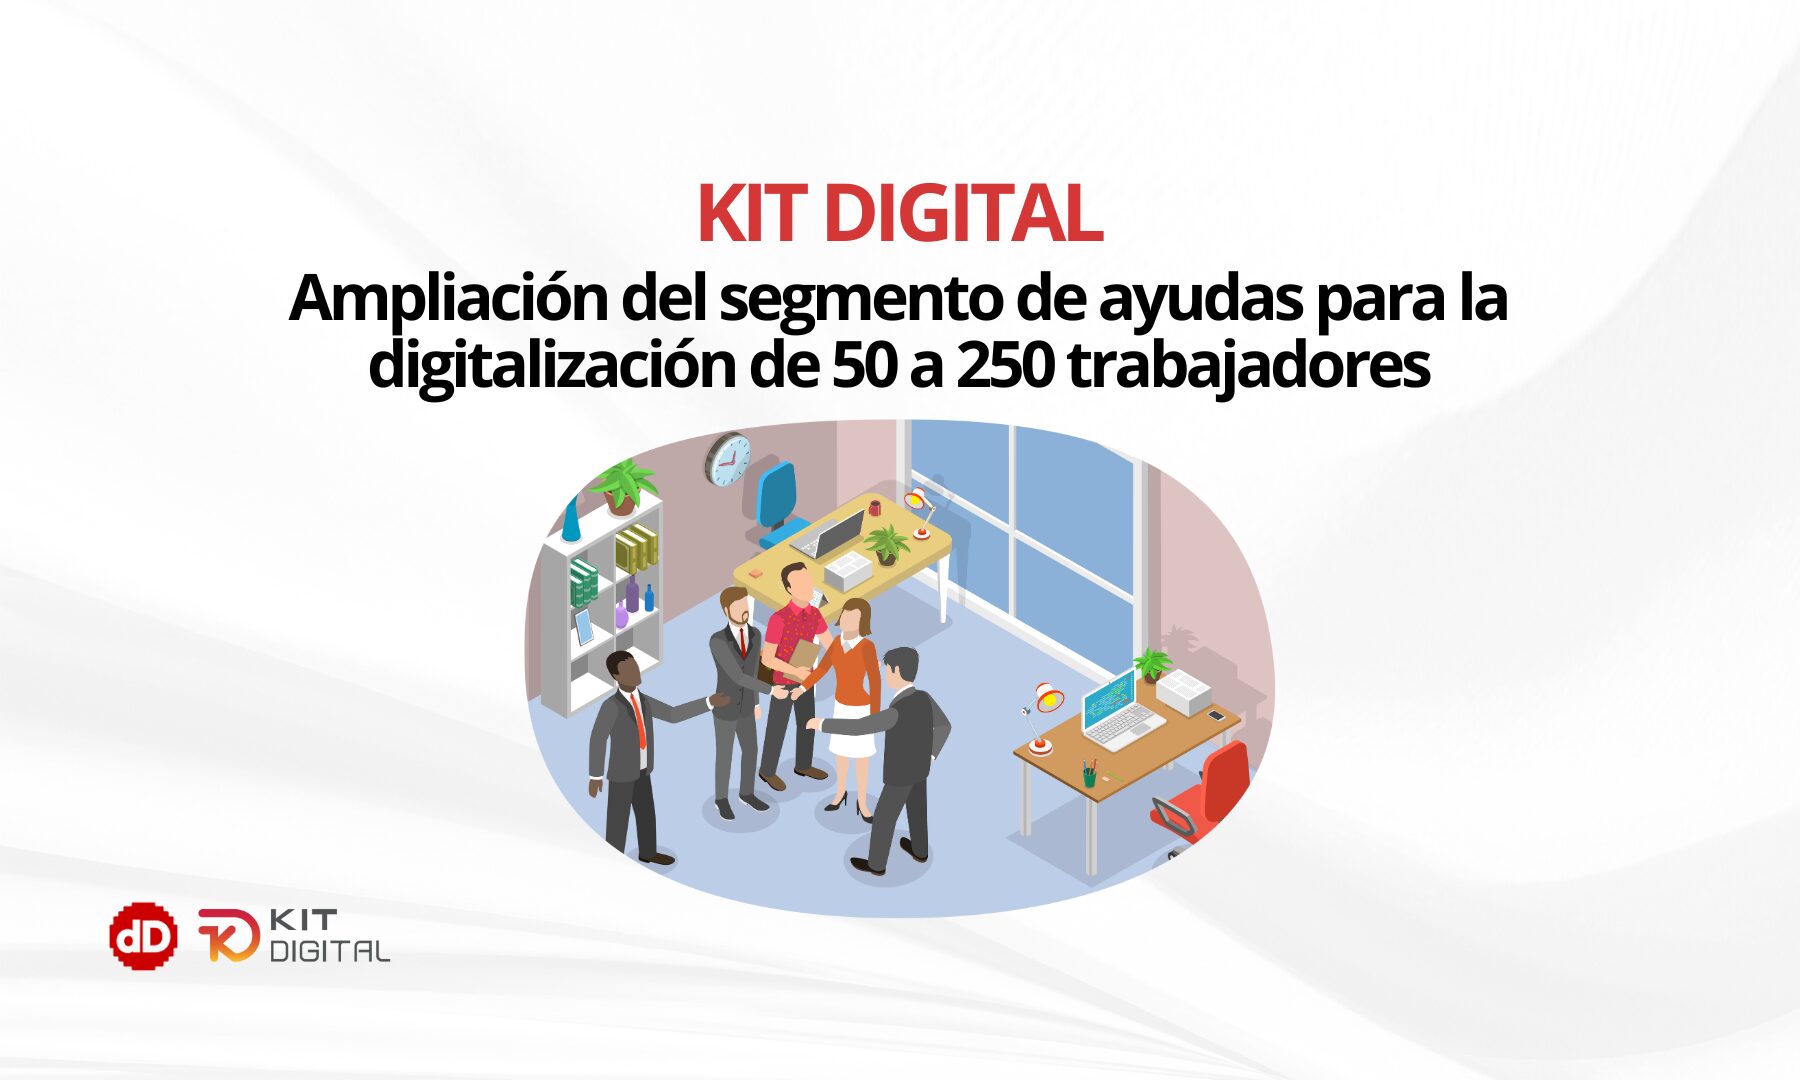 Ampliación segmento del kit digital hasta 250 trabajadores